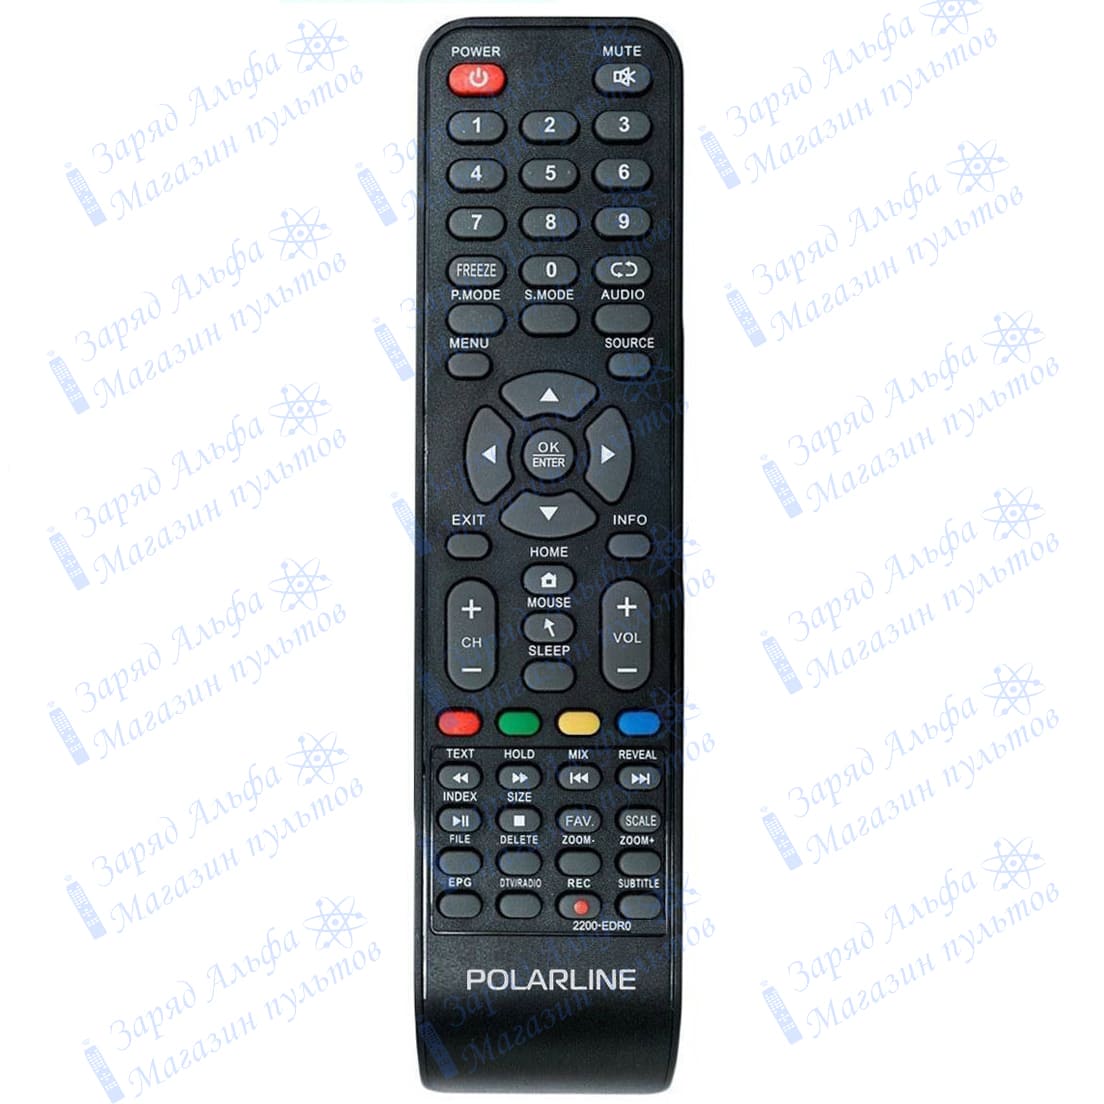 Пульт к Polarline 2200-EDR0POLR для телевизора 32PL11TC-SM